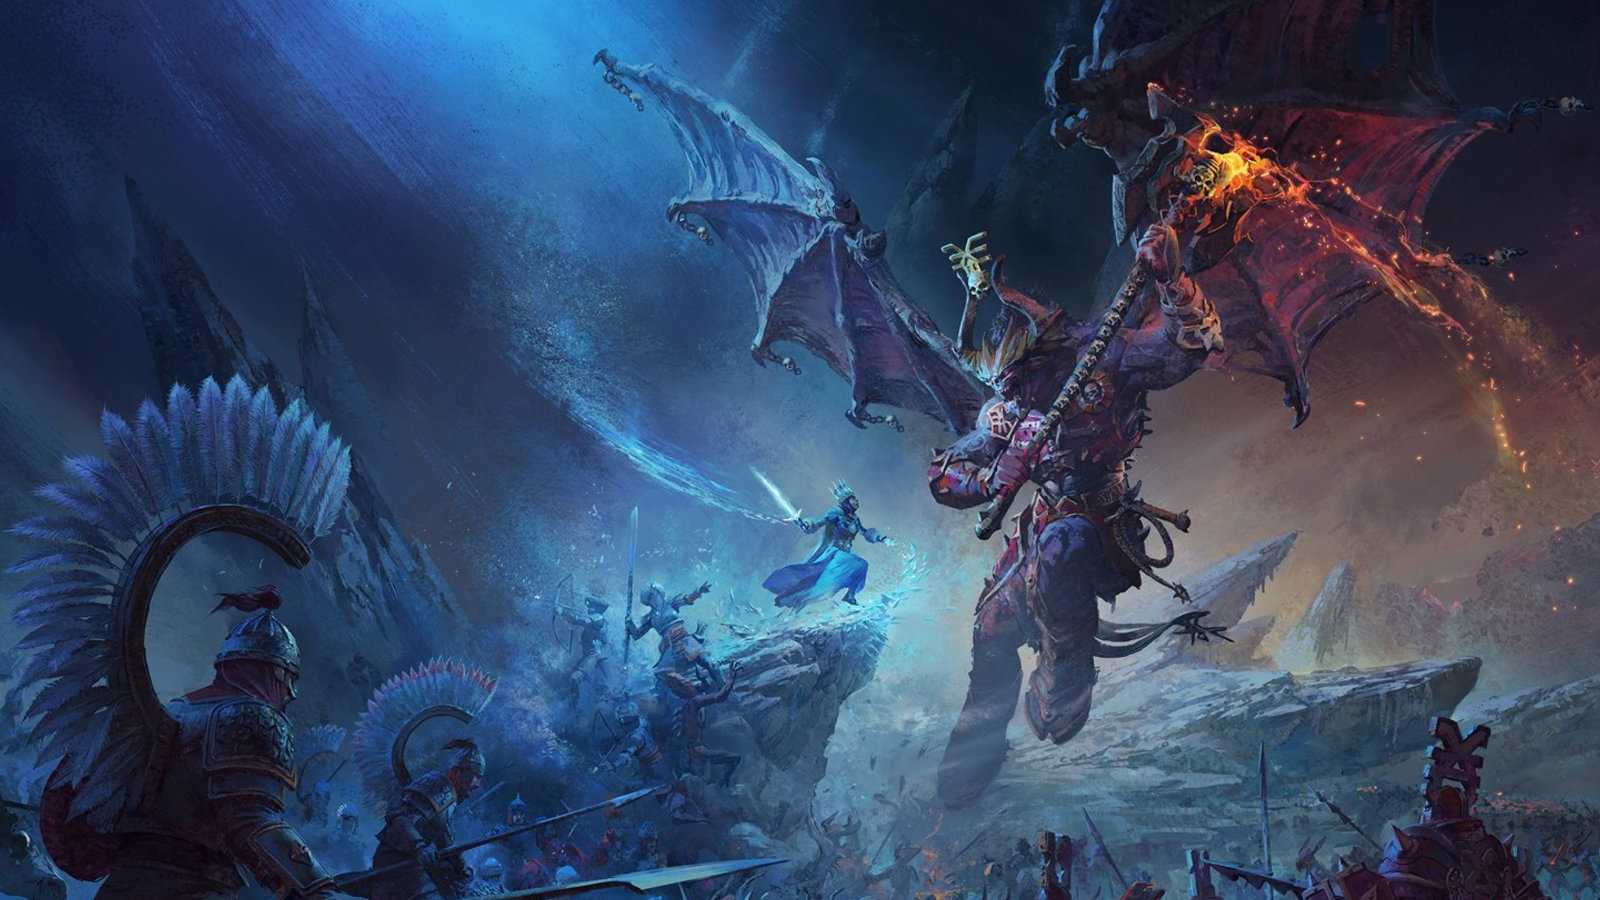 Total War: Warhammer 3 slaví úspěch. Spojená kampaň všech tří dílů zvedla čísla hráčů desetinásobně